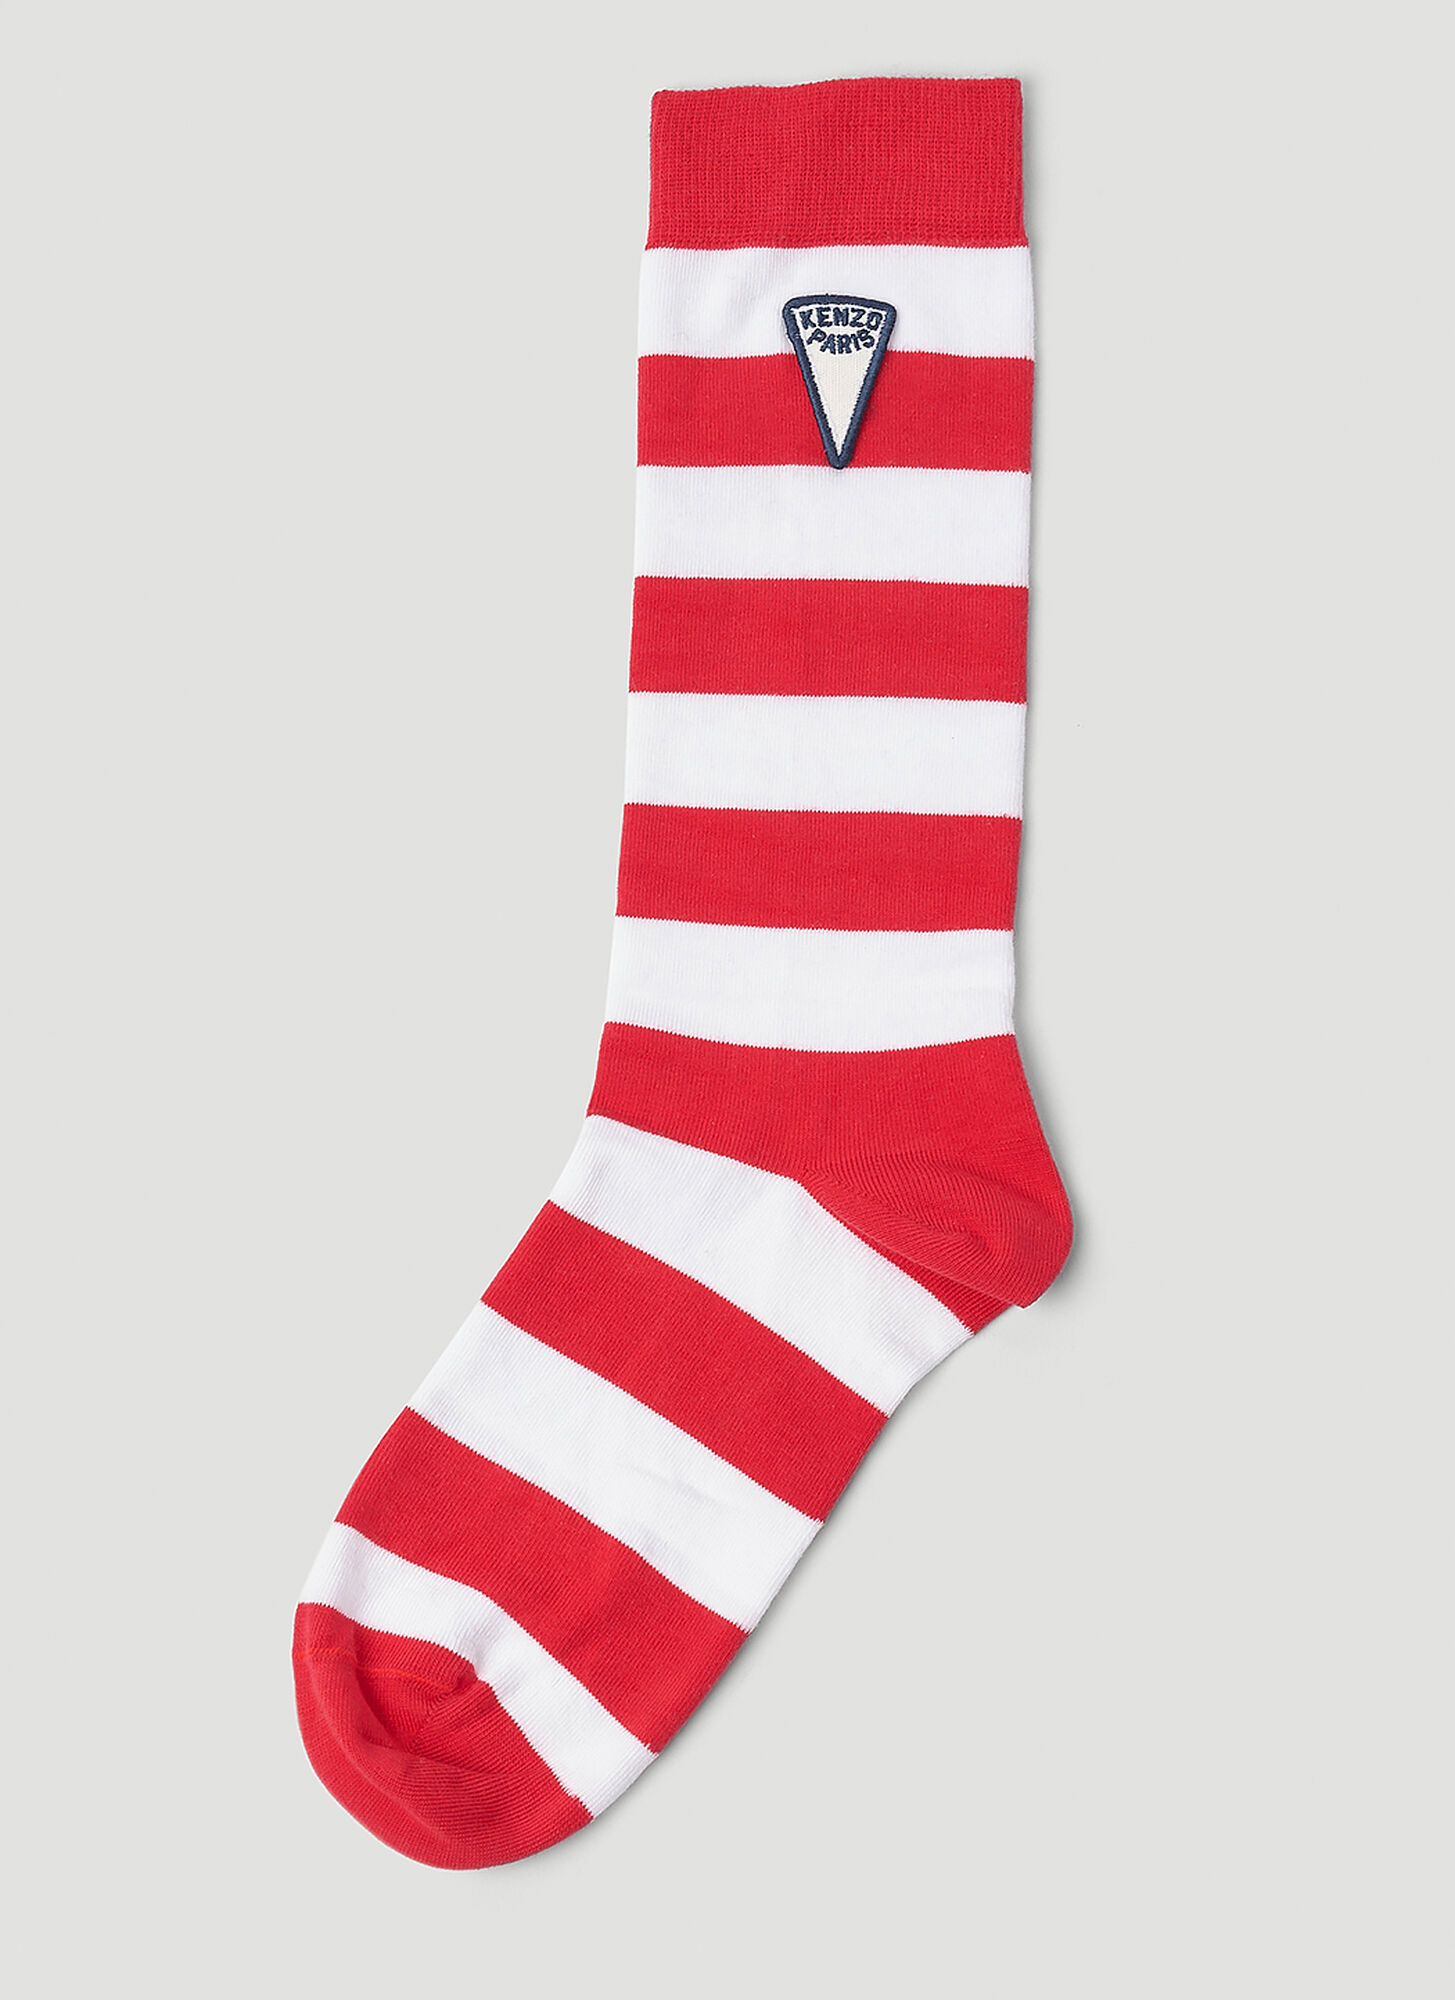 Kenzo Striped Socks In Red